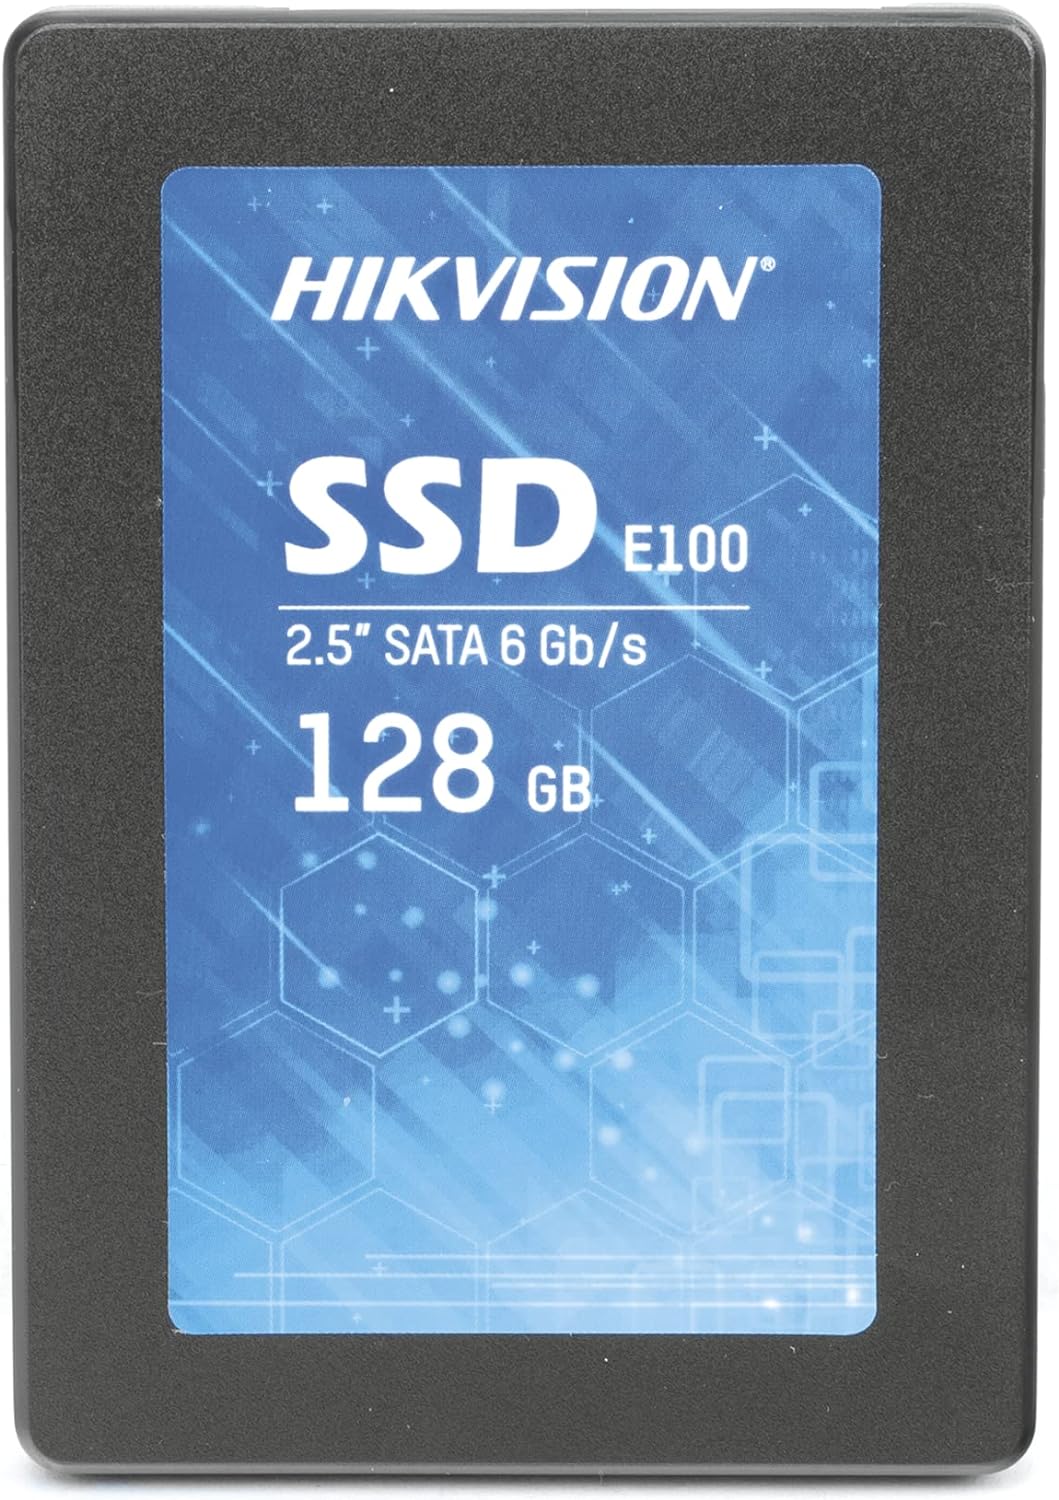 هيكفيجن E-100 SSD 128 جيجا